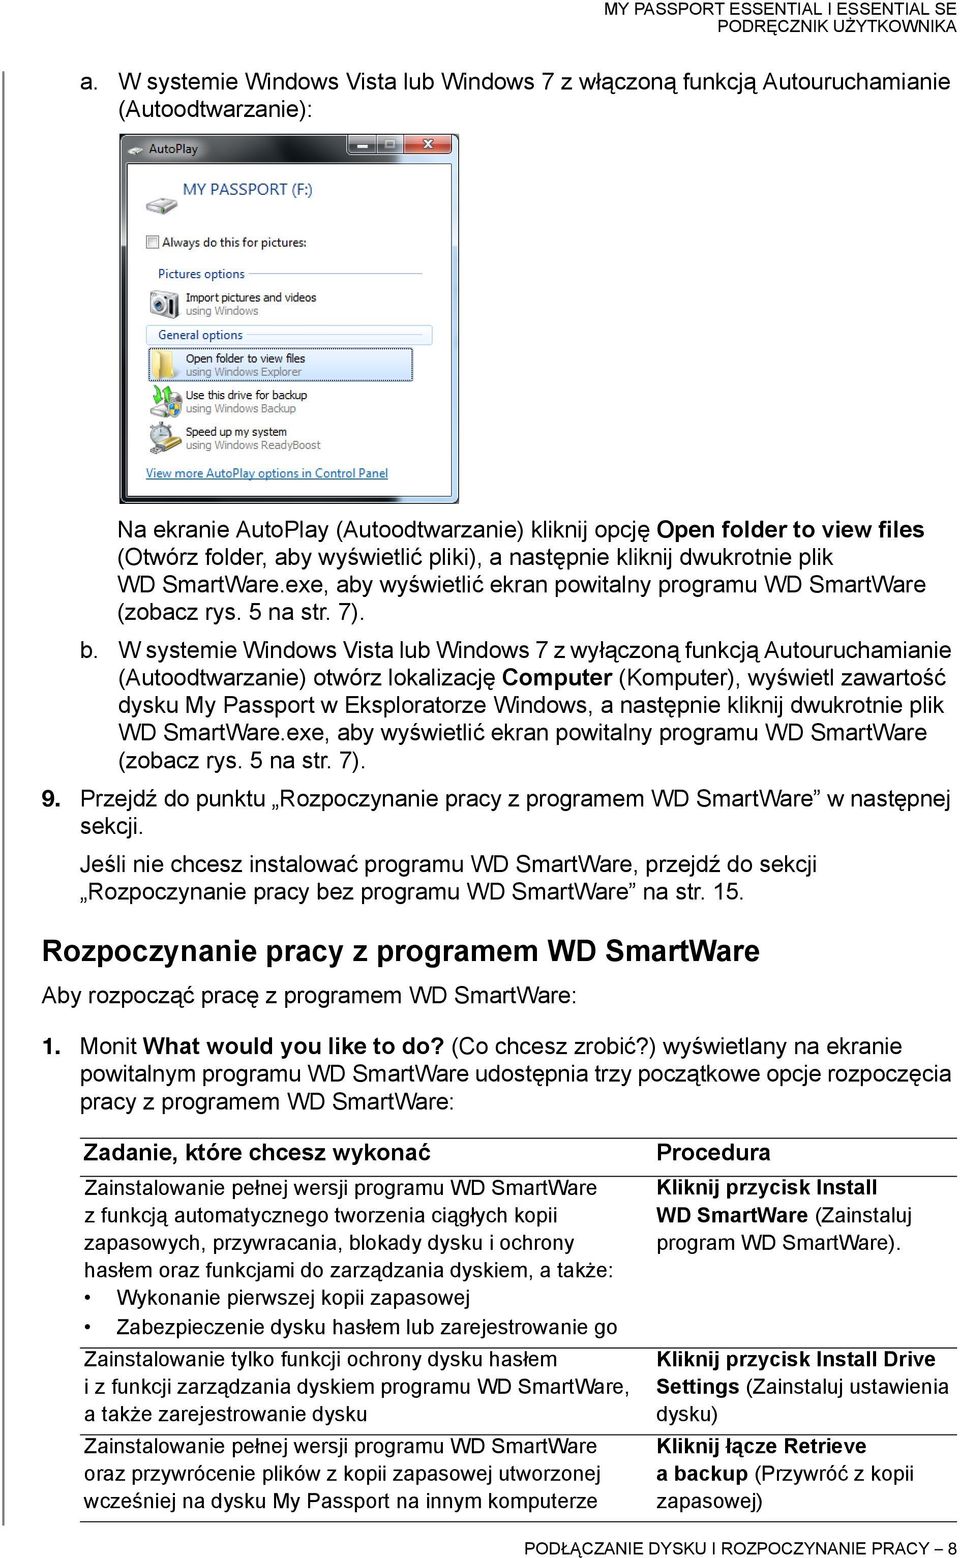 W systemie Windows Vista lub Windows 7 z wyłączoną funkcją Autouruchamianie (Autoodtwarzanie) otwórz lokalizację Computer (Komputer), wyświetl zawartość dysku My Passport w Eksploratorze Windows, a